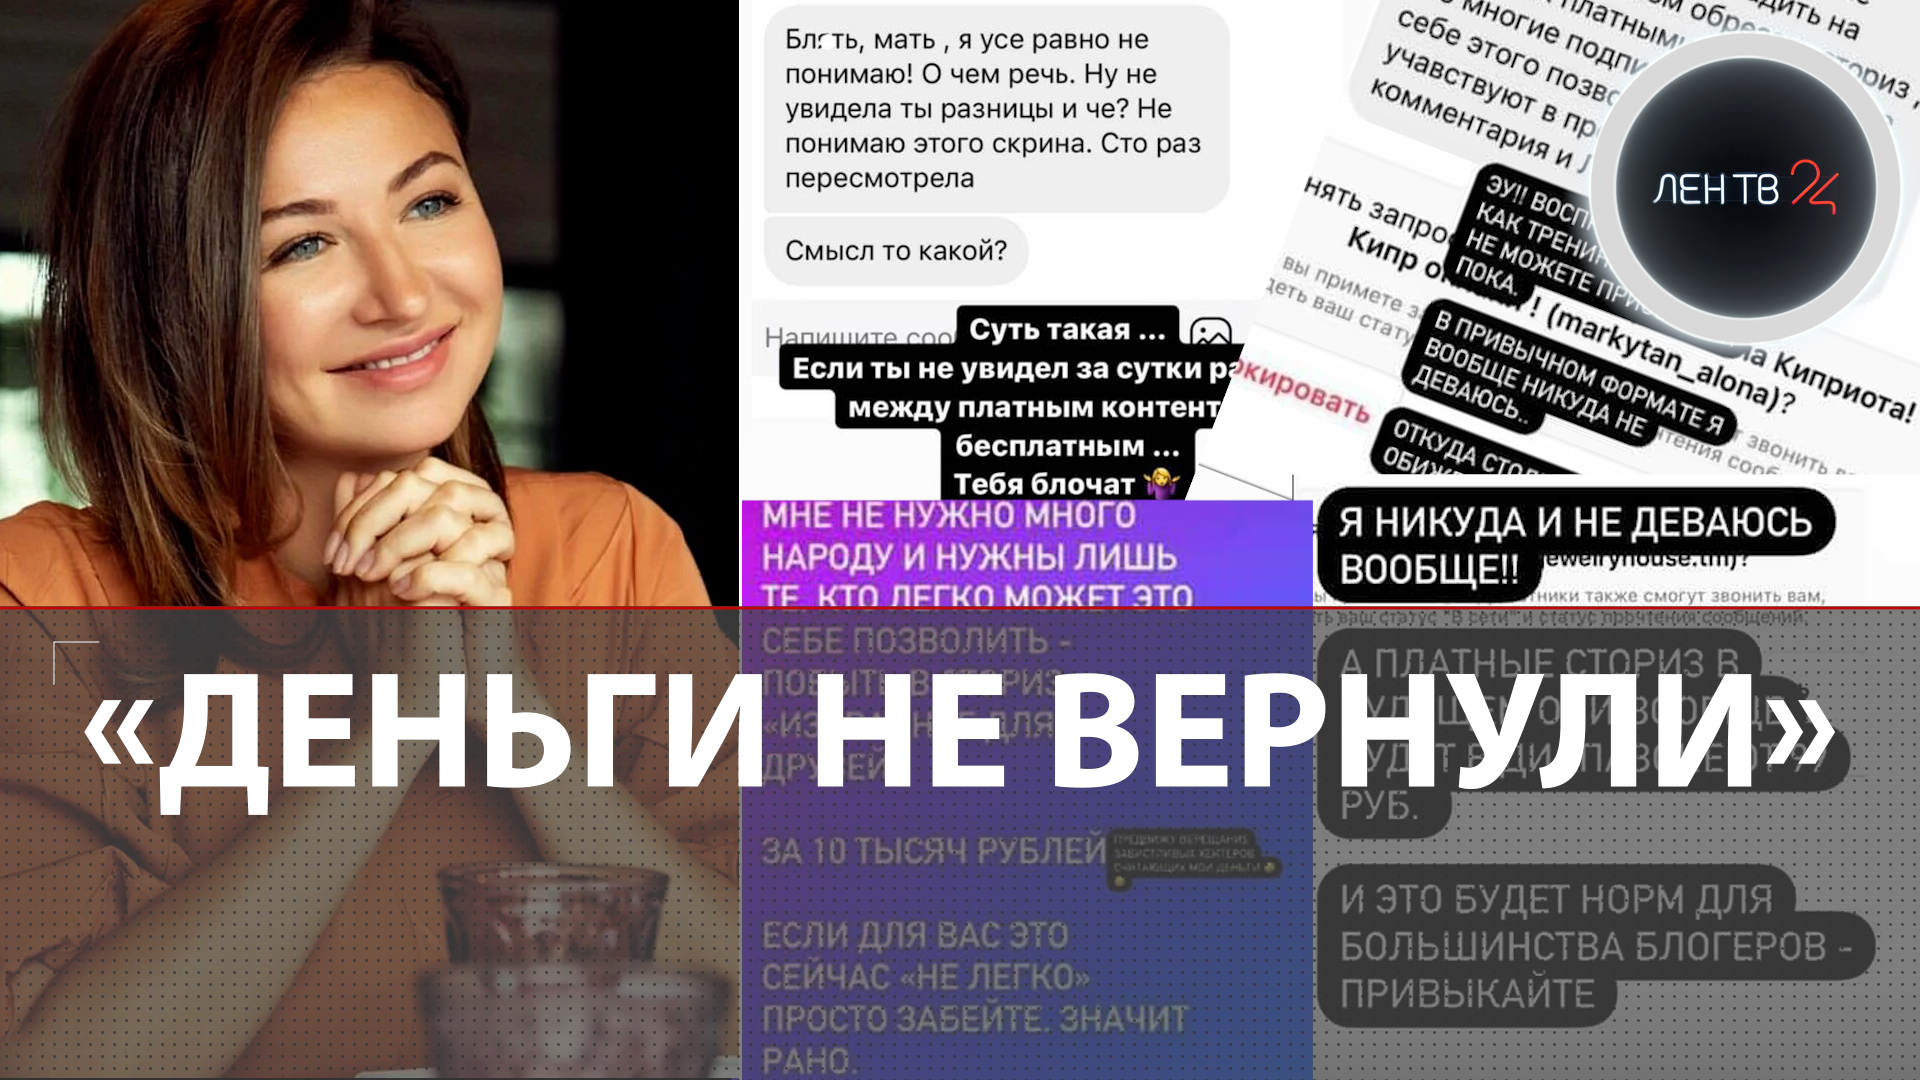 Платные сторис Блиновской | Елена блокирует подписчиков и не возвращает деньги